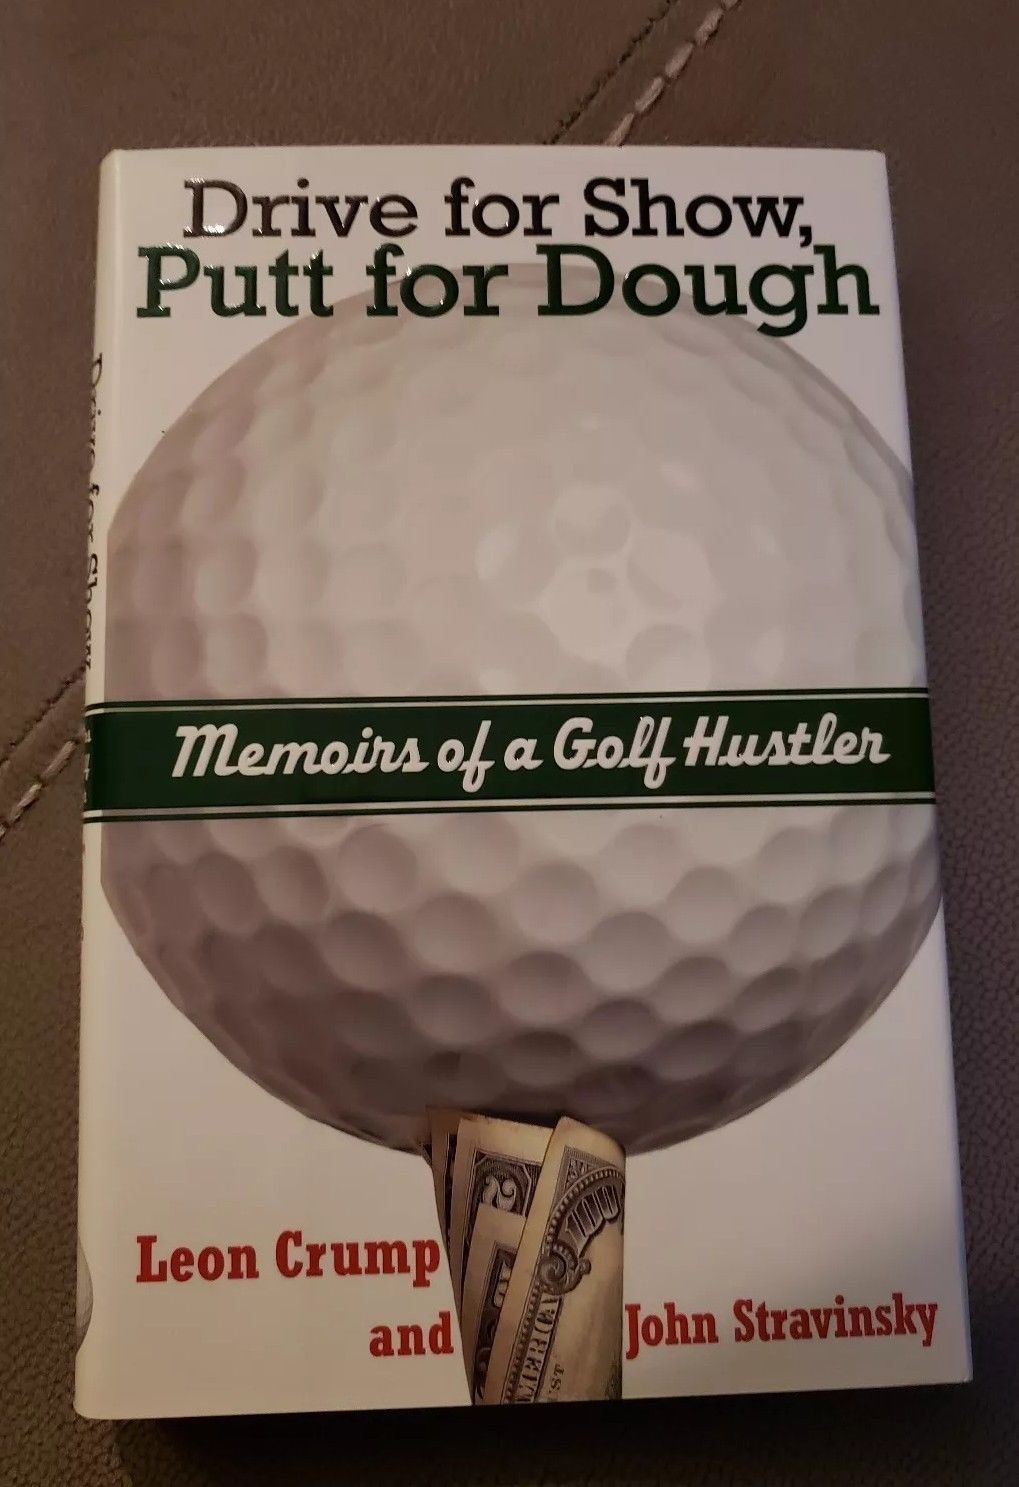 Pixy reccomend Dough drive golf hustler memoir putt show